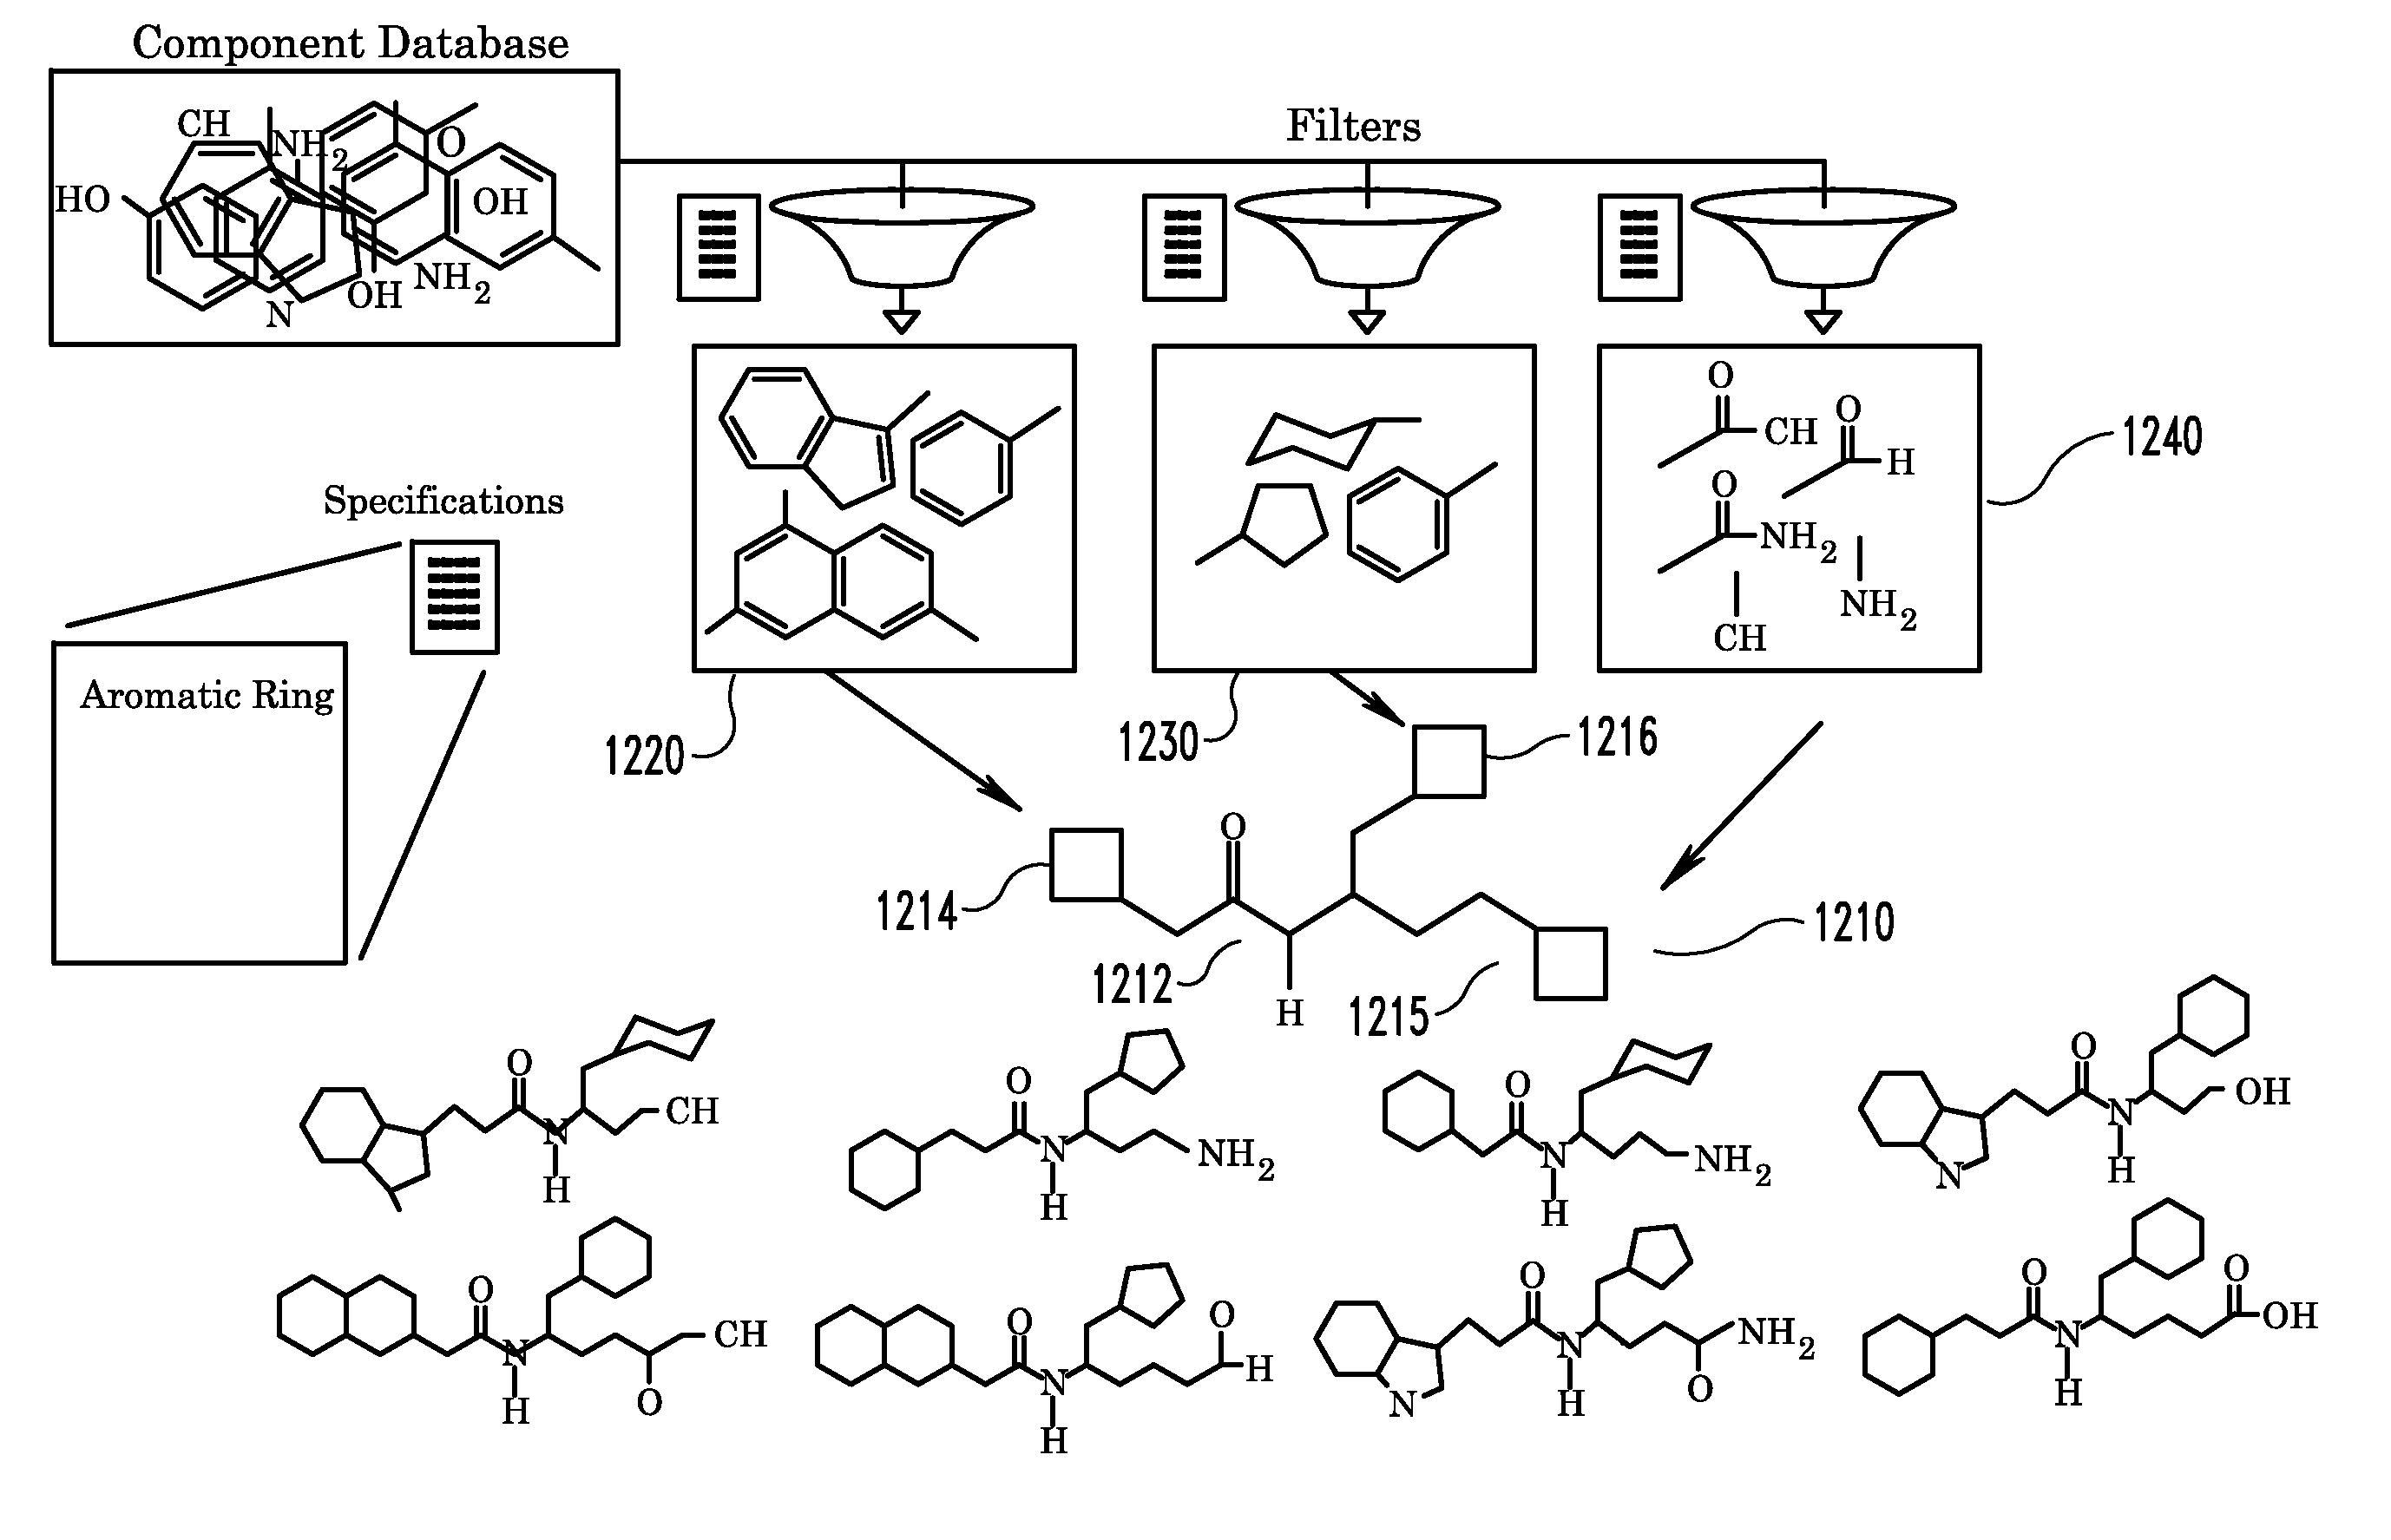 System and Method for Improved Computer Drug Design